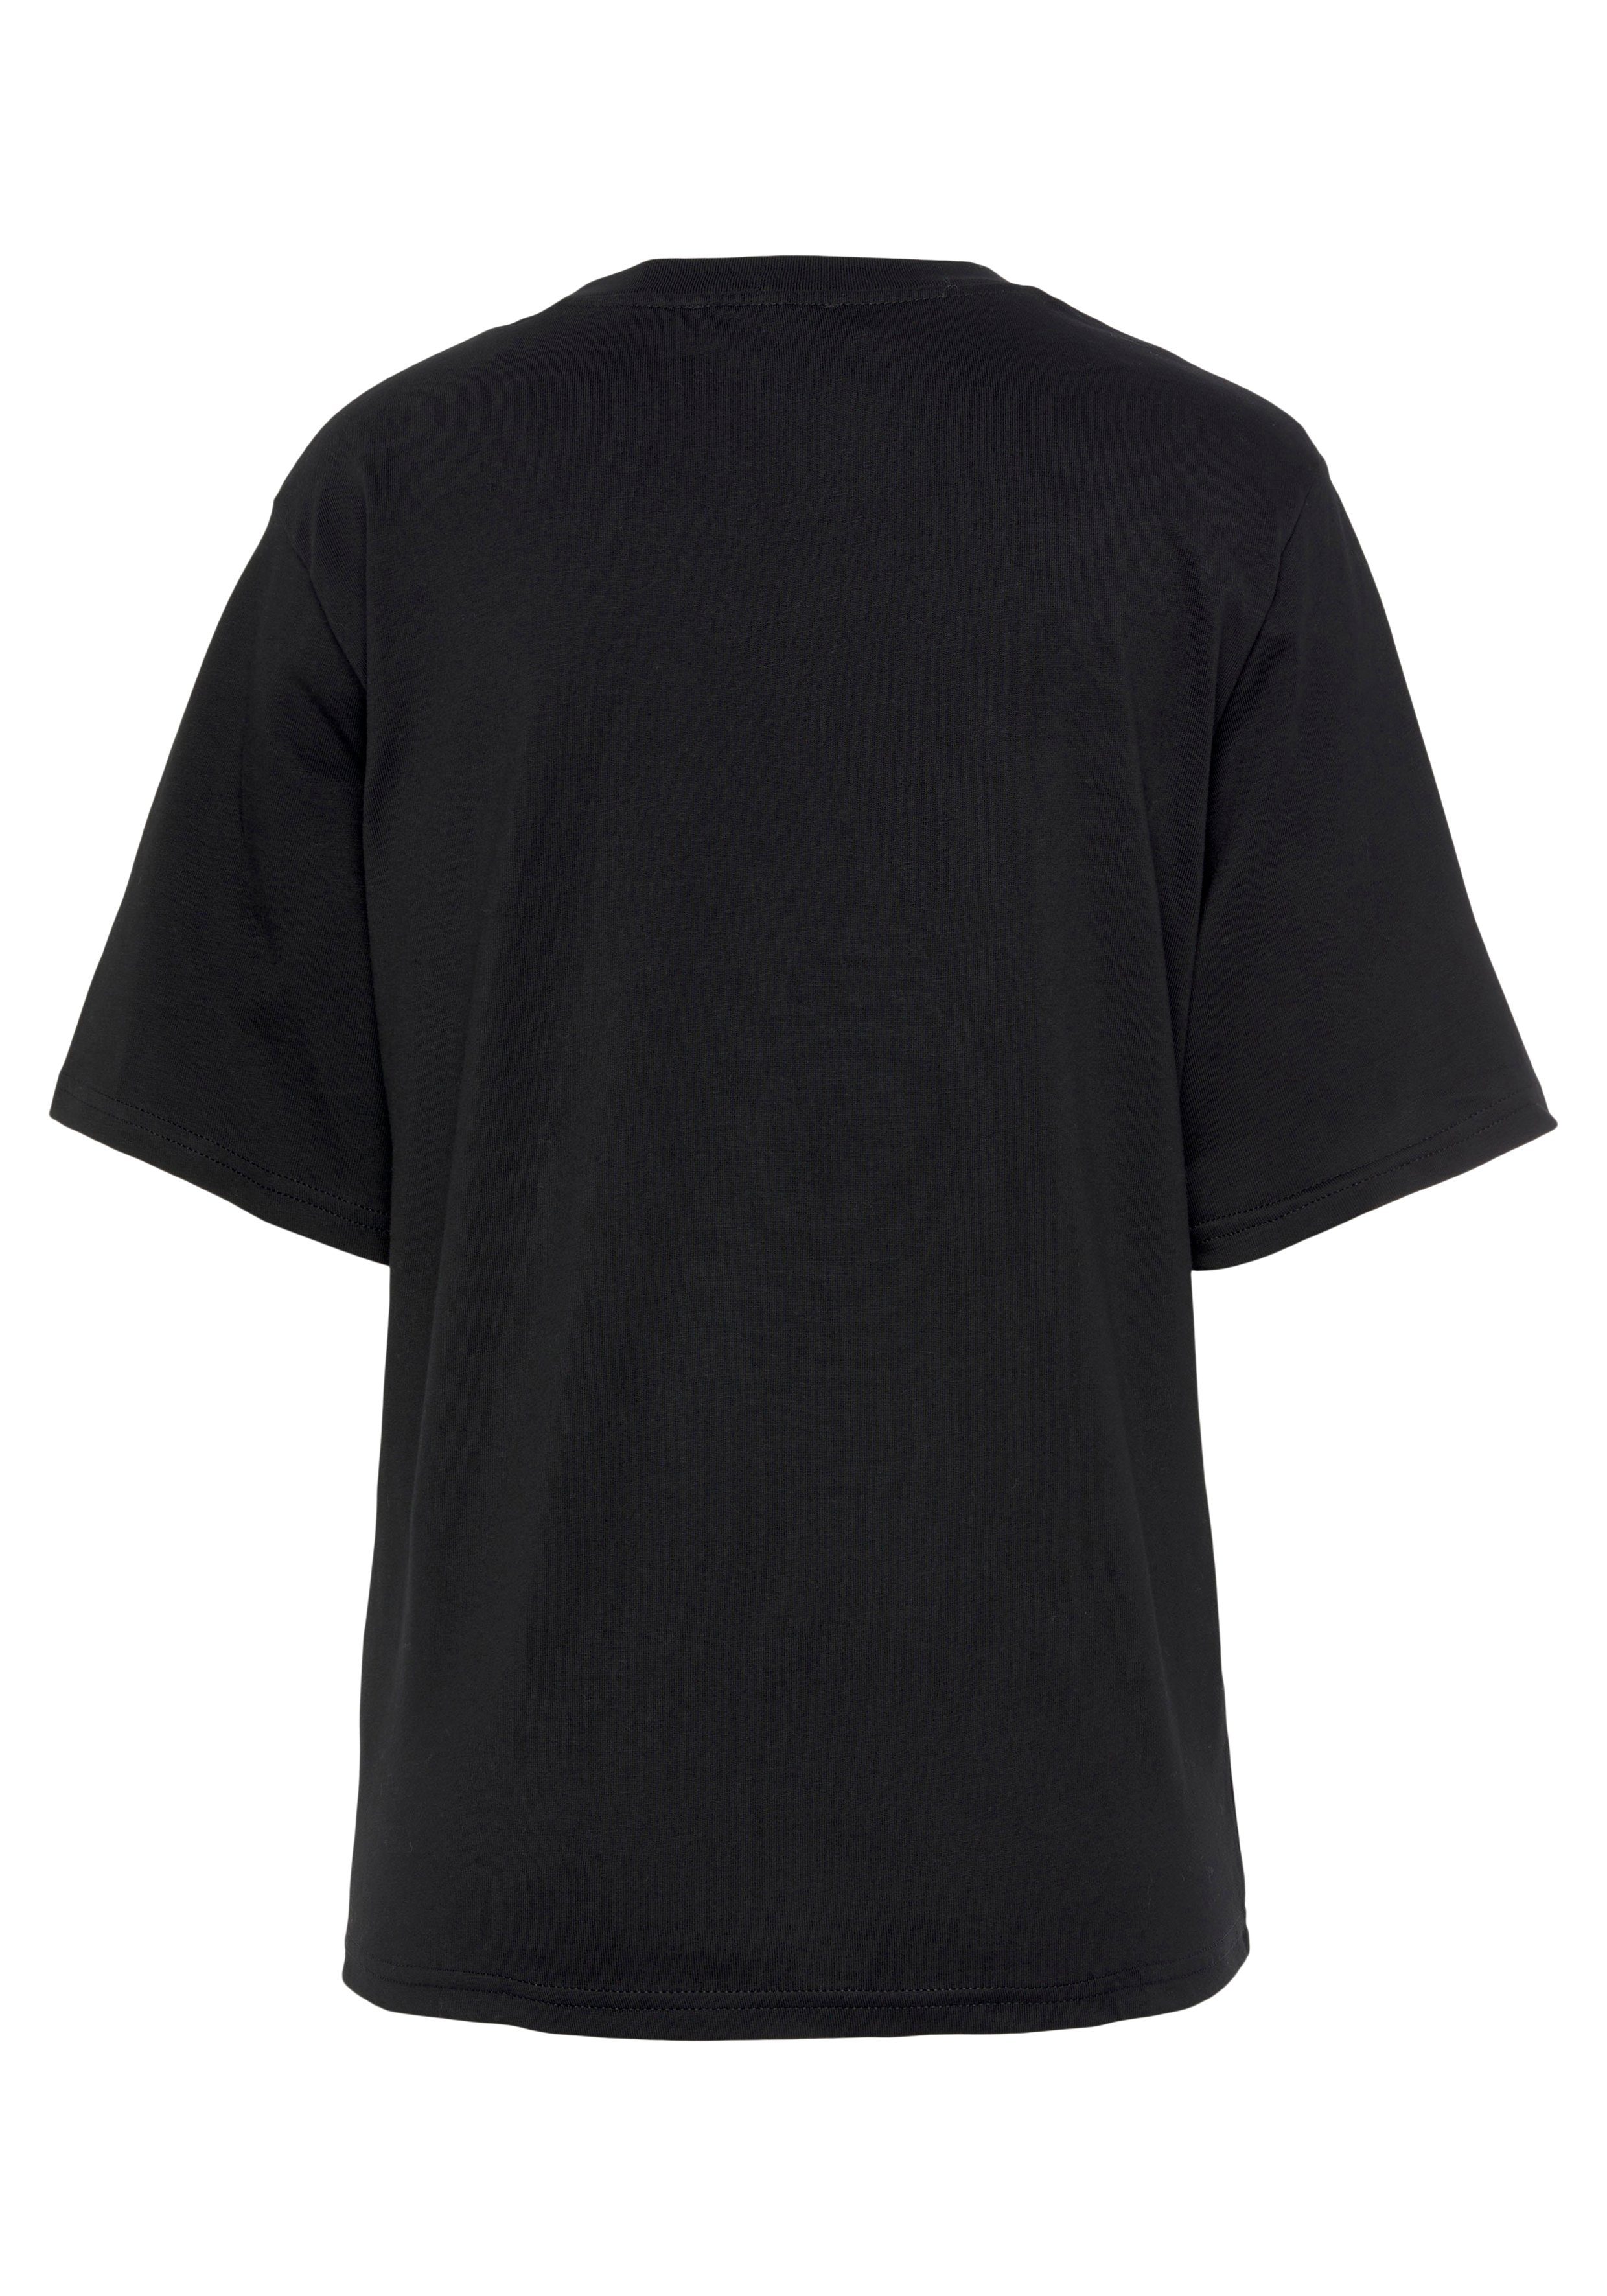 mit auf schwarz Benetton of Brust Colors der United Logodruck T-Shirt